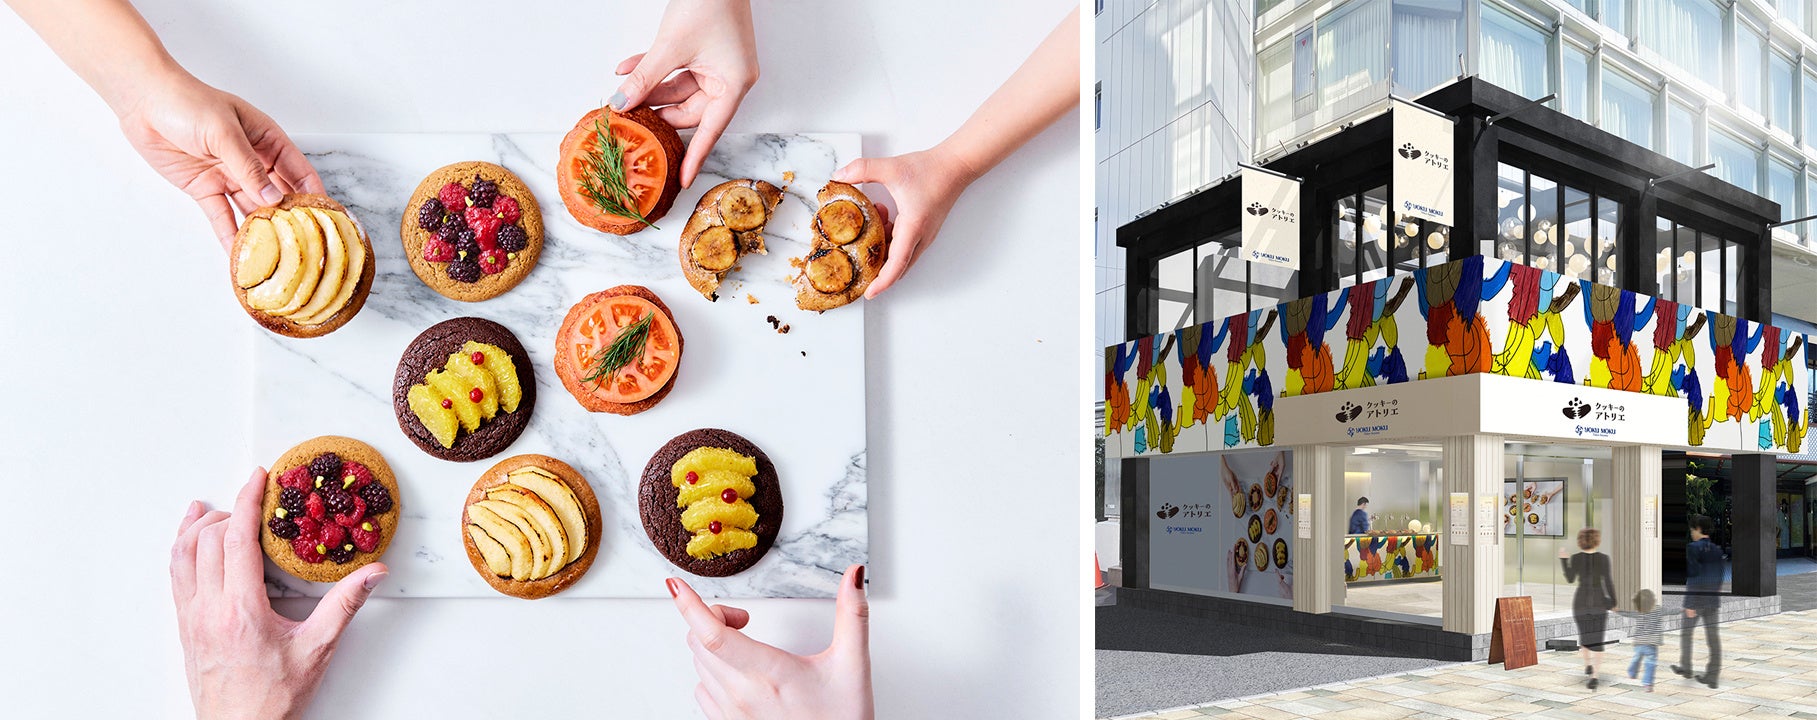 ヨックモック55周年記念企画 アートとお菓子で人と人とのつながりを創造するポップアップショップ「クッキーのアトリエ 」